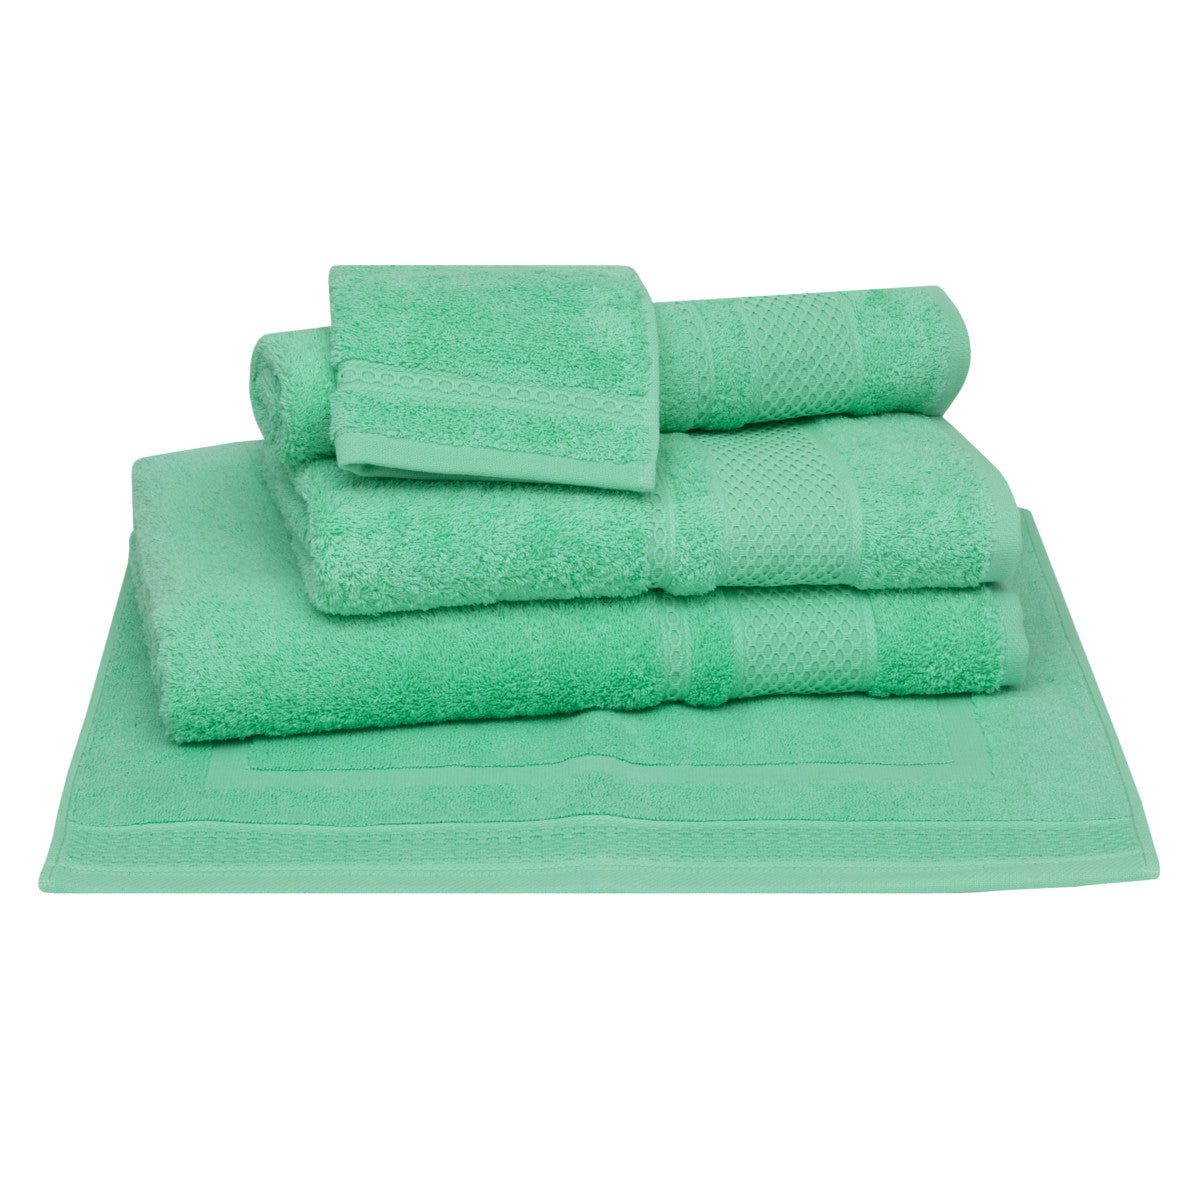 100% linen tea towels. Kitchen towels. Emerald green mint